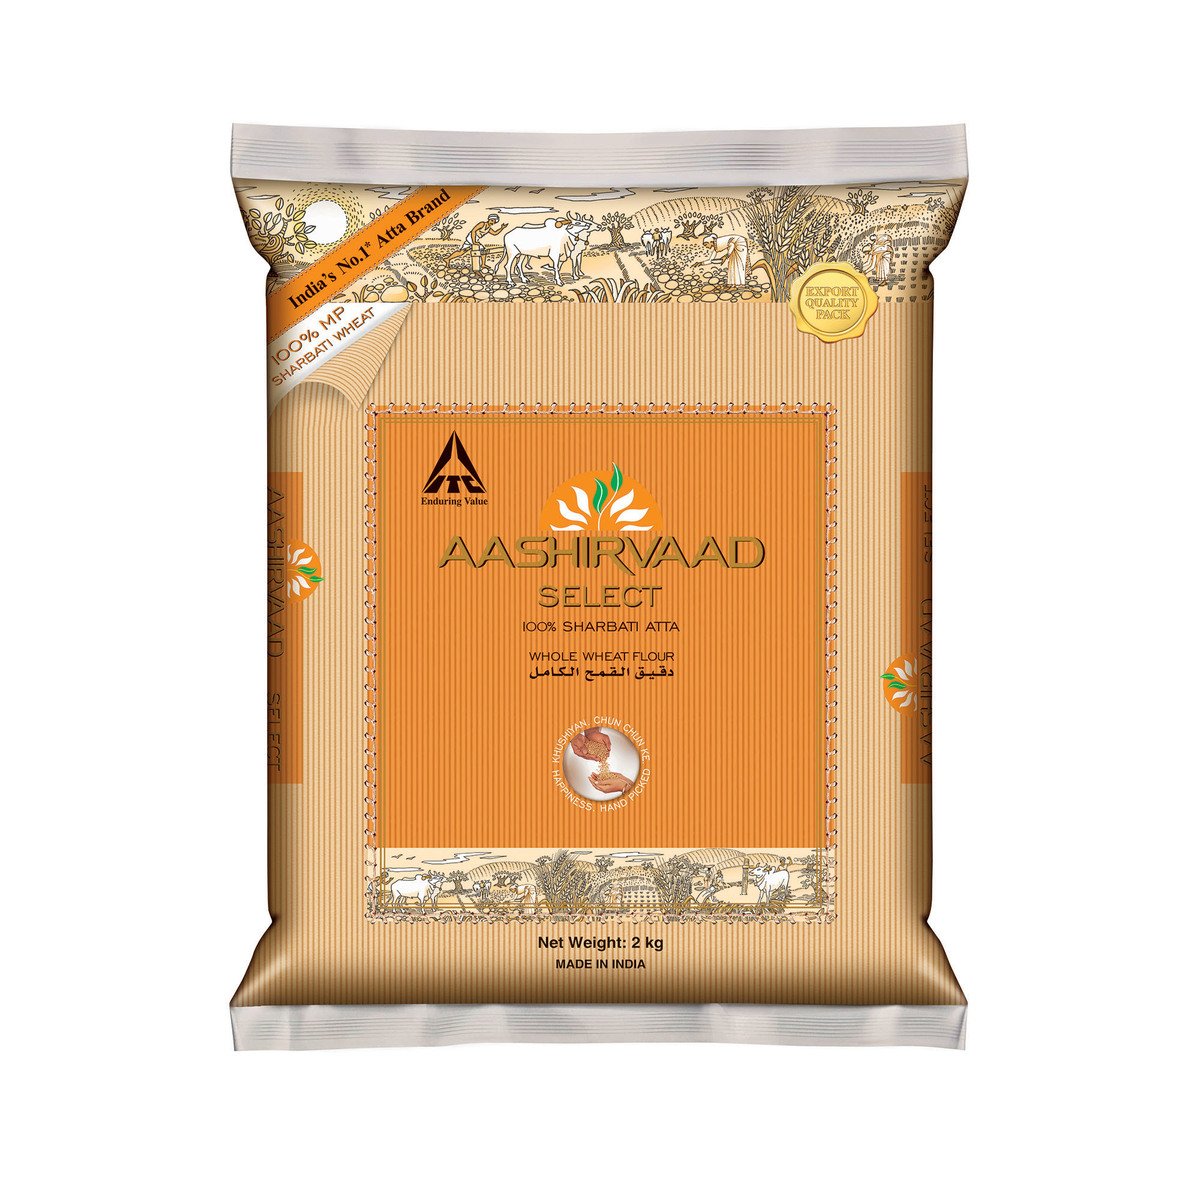 Aashirvaad Whole Wheat Flour Select Sharbati Atta 2kg